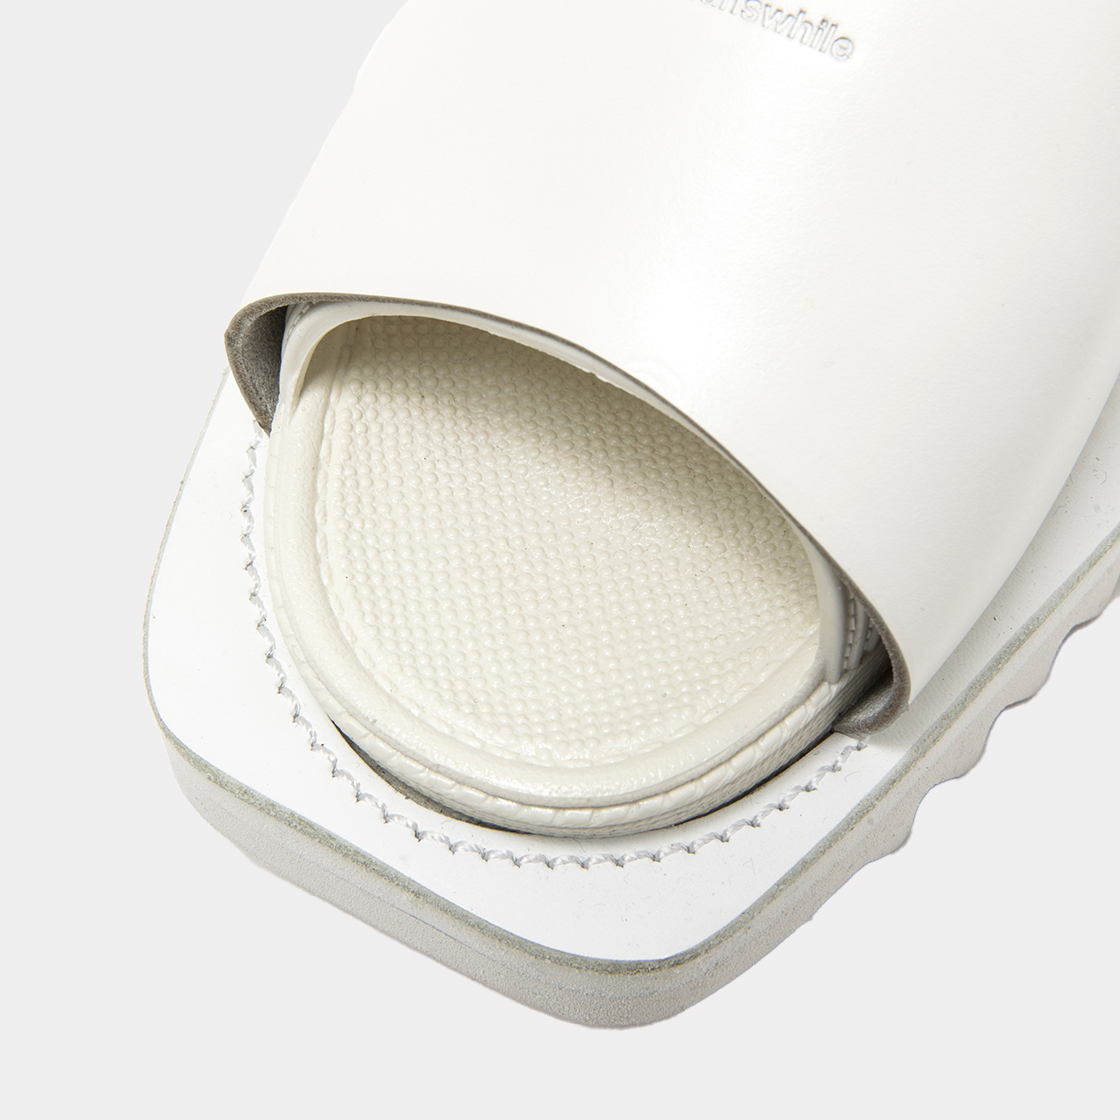 Overwrap Square Sandals Vibram® Sole / Off White